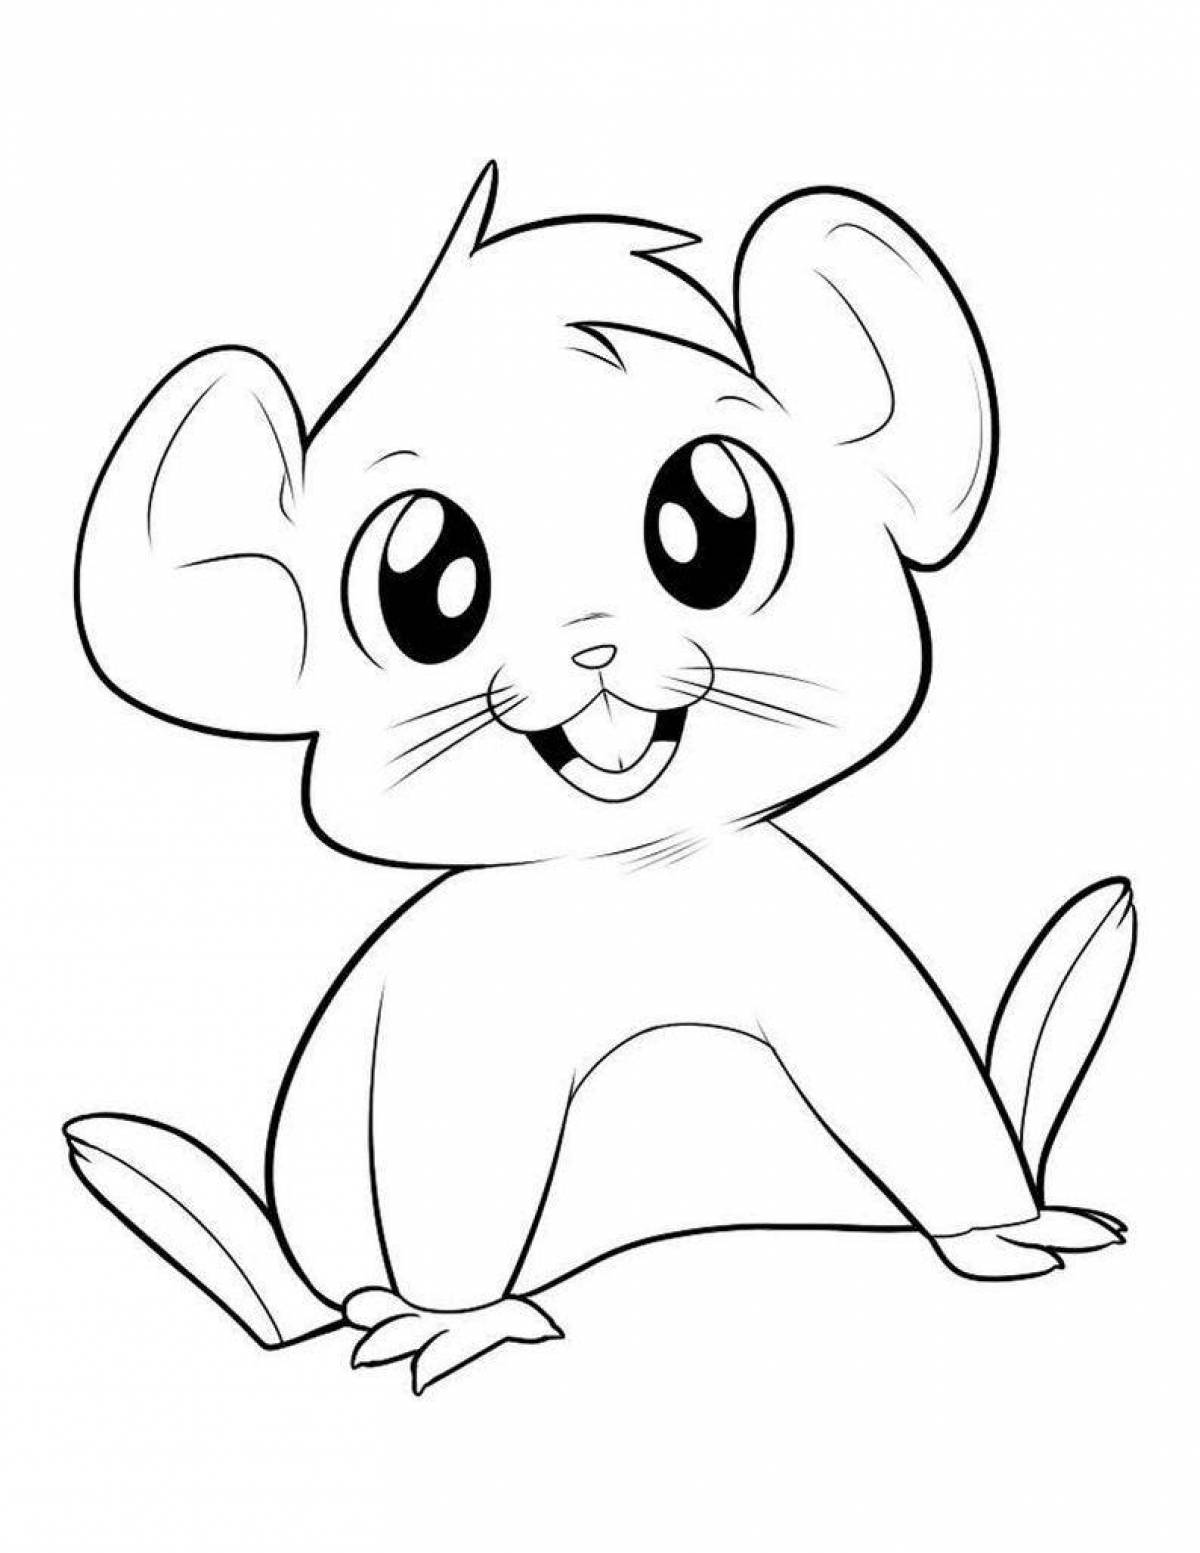 Легкие бесплатные картинки. Раскраска мышка. Раскраска мышонок. Мультяшные рисунки карандашом. Мышонок раскраска для детей.